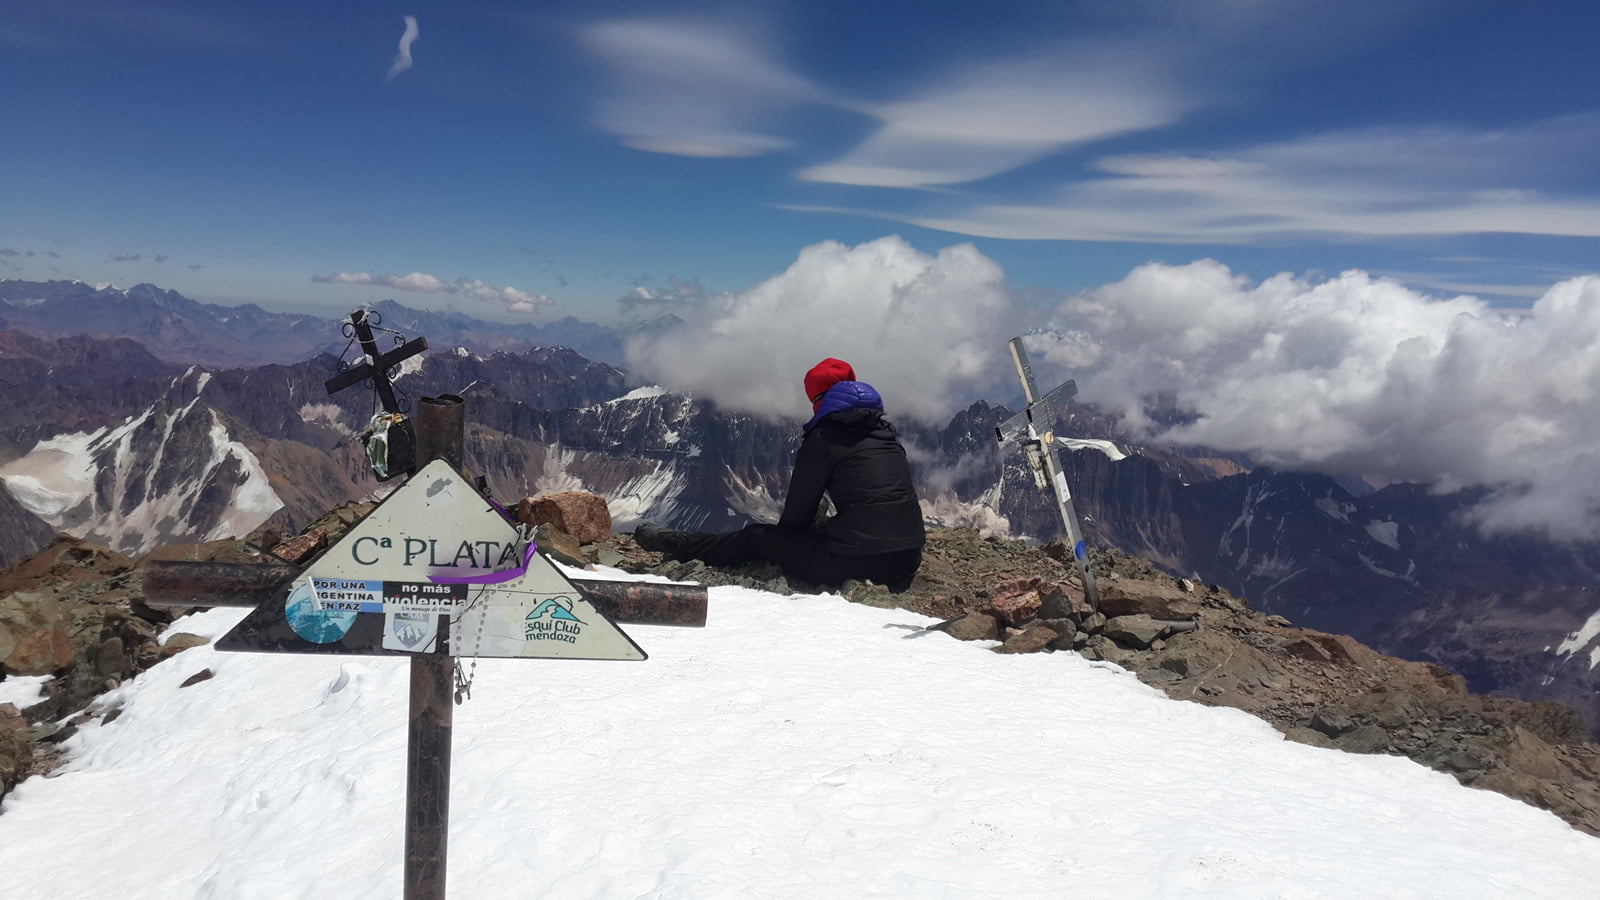 Descanso de cumbre Ascent Mount Plata